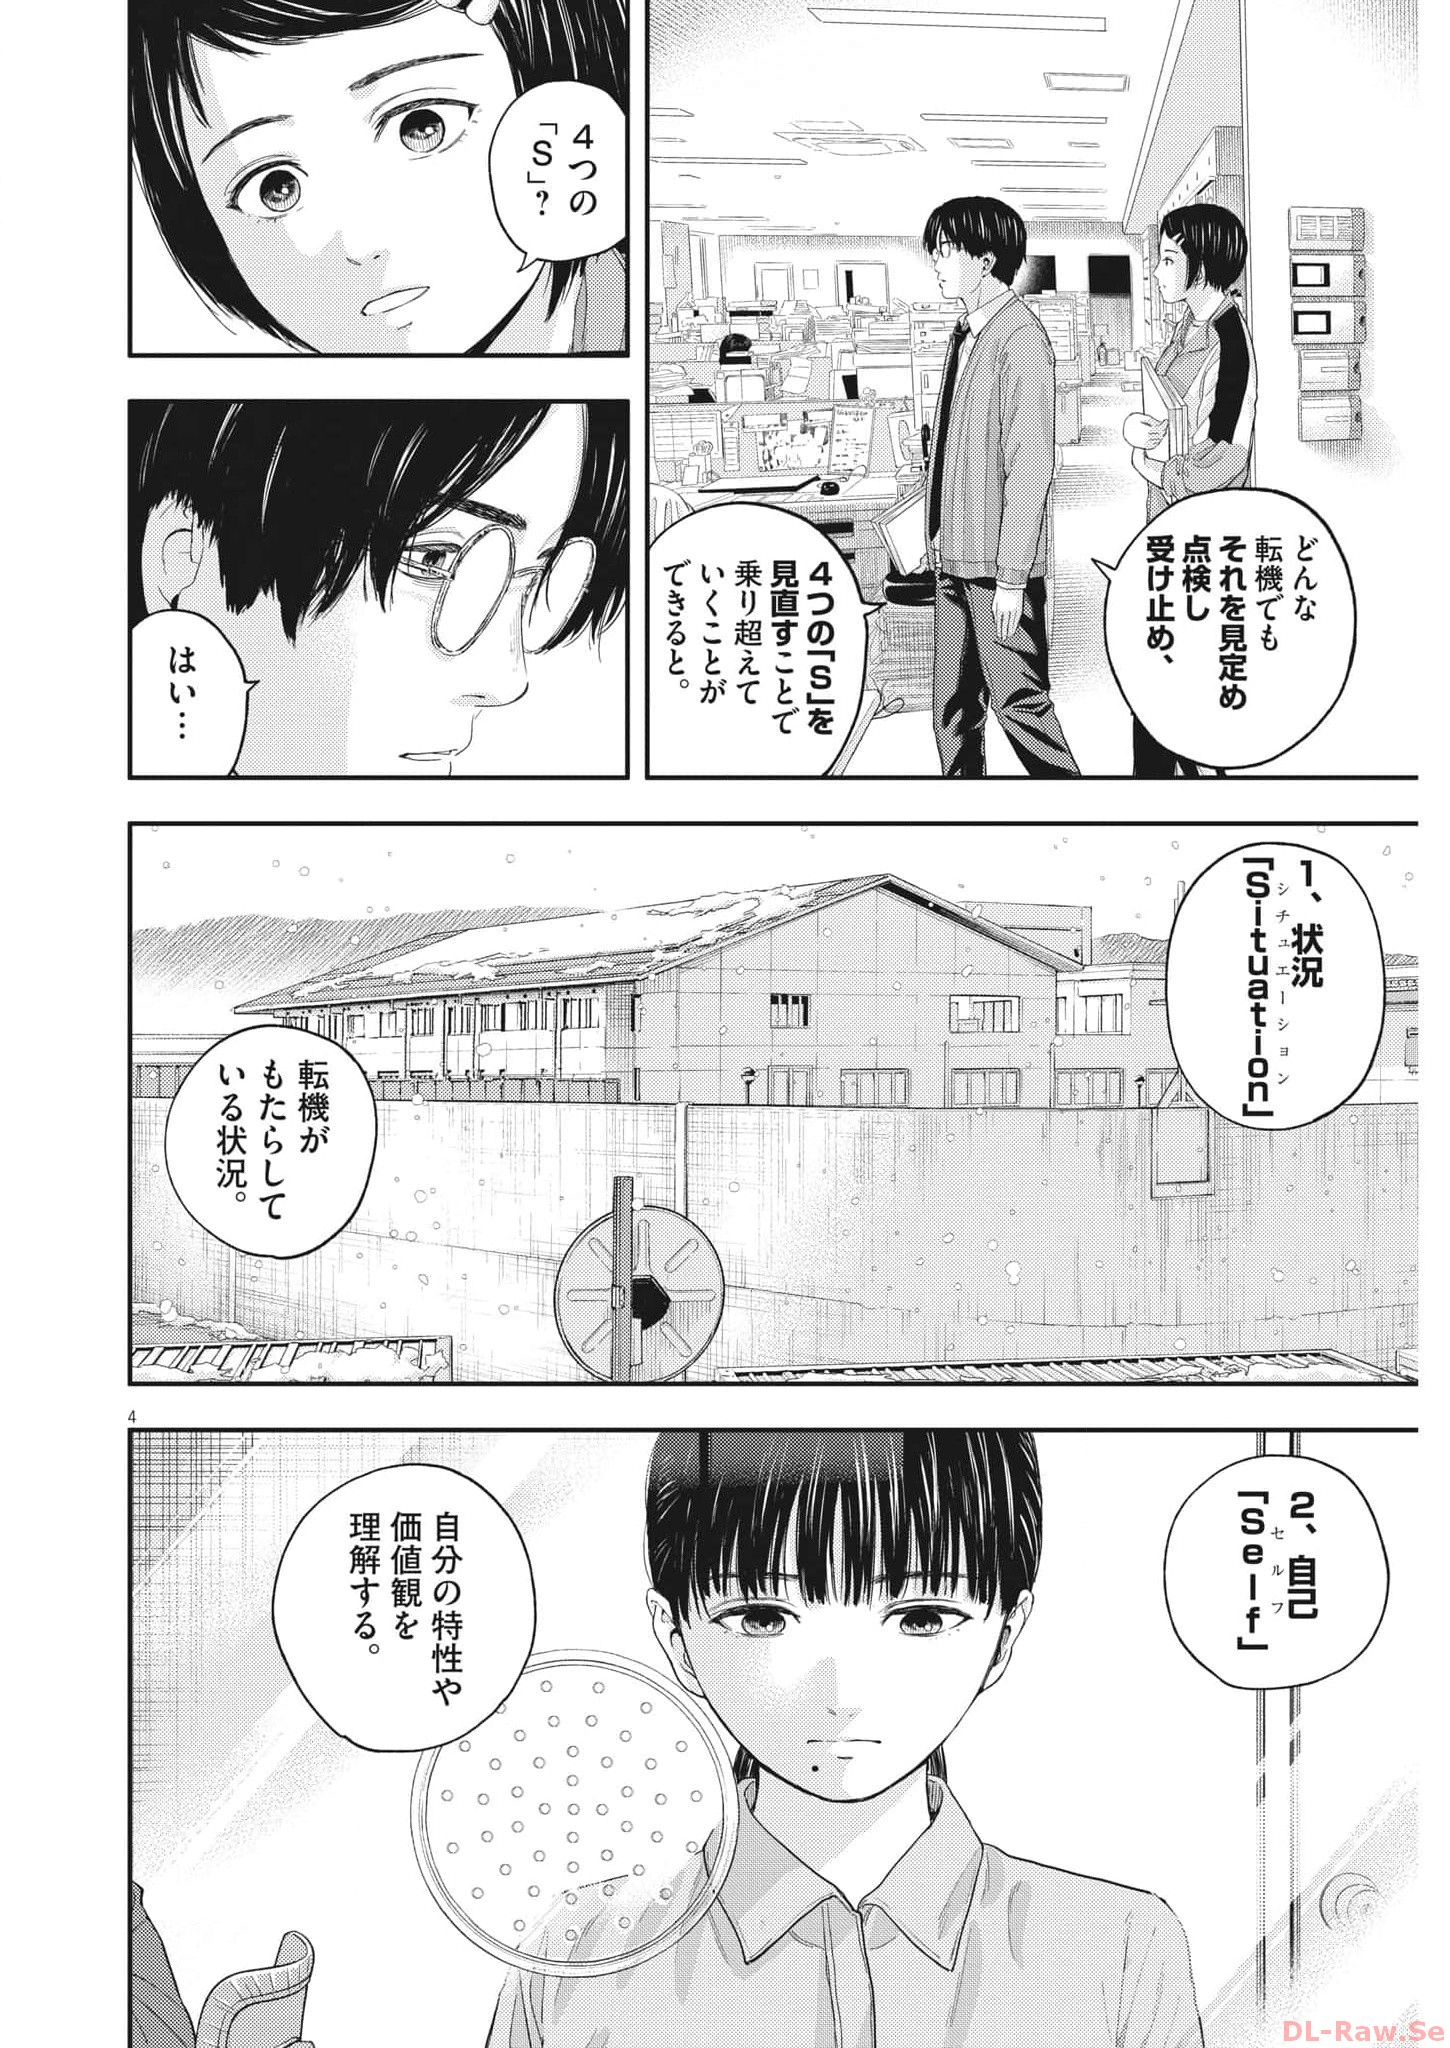 Yumenashi-sensei no Shinroshidou - Chapter 18 - Page 4